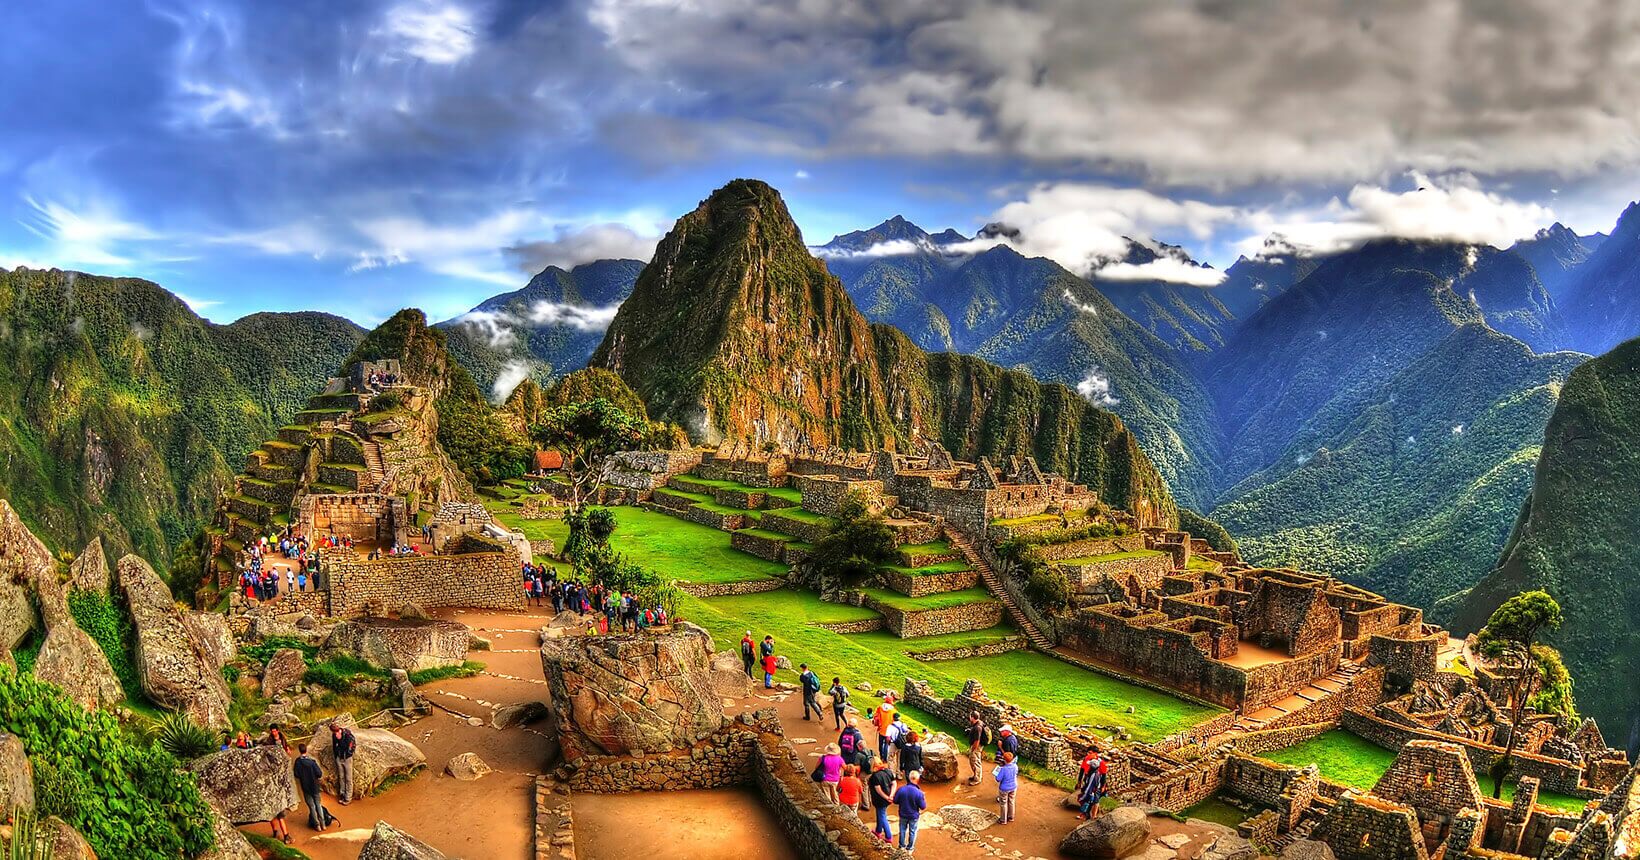 Viaje ao Peru! Passagens aéreas baratas para Lima ou Cusco a partir de R$ 1.168